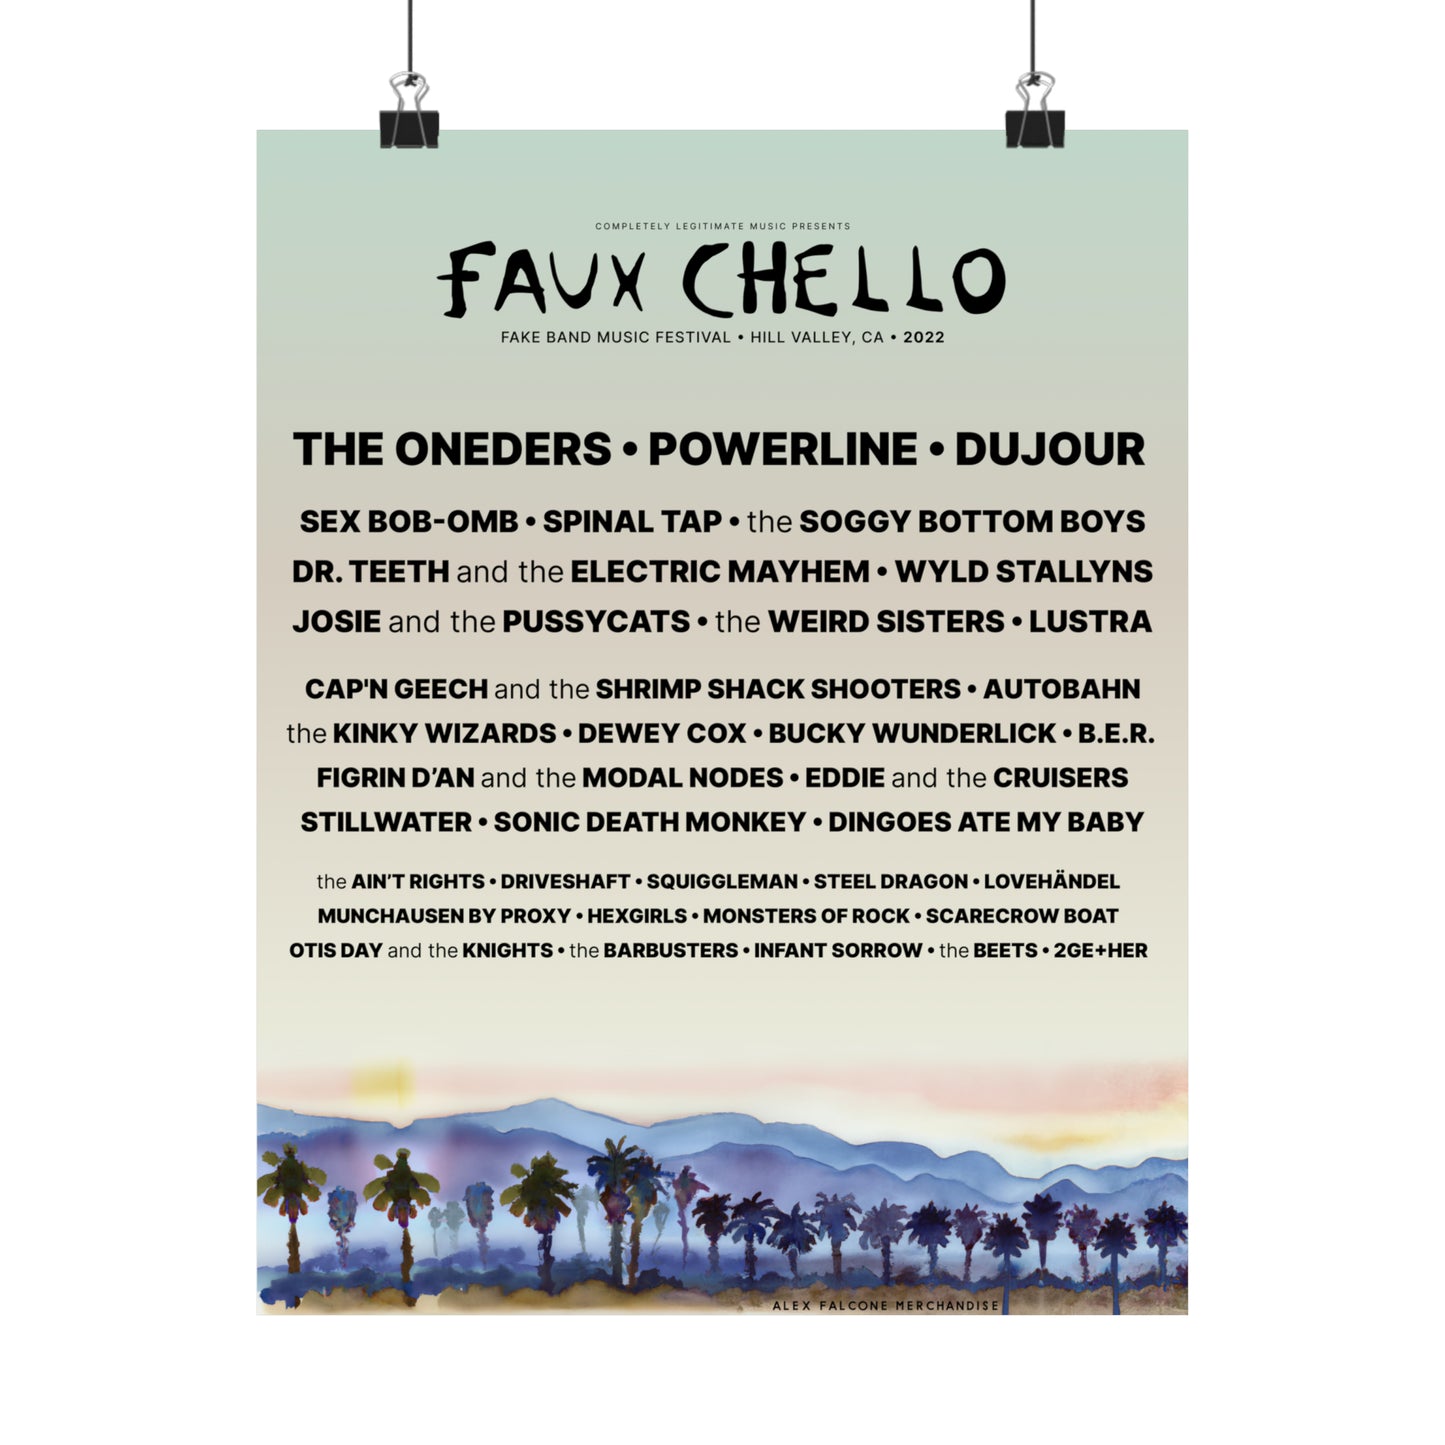 Faux Chello 22 Festival Poster!